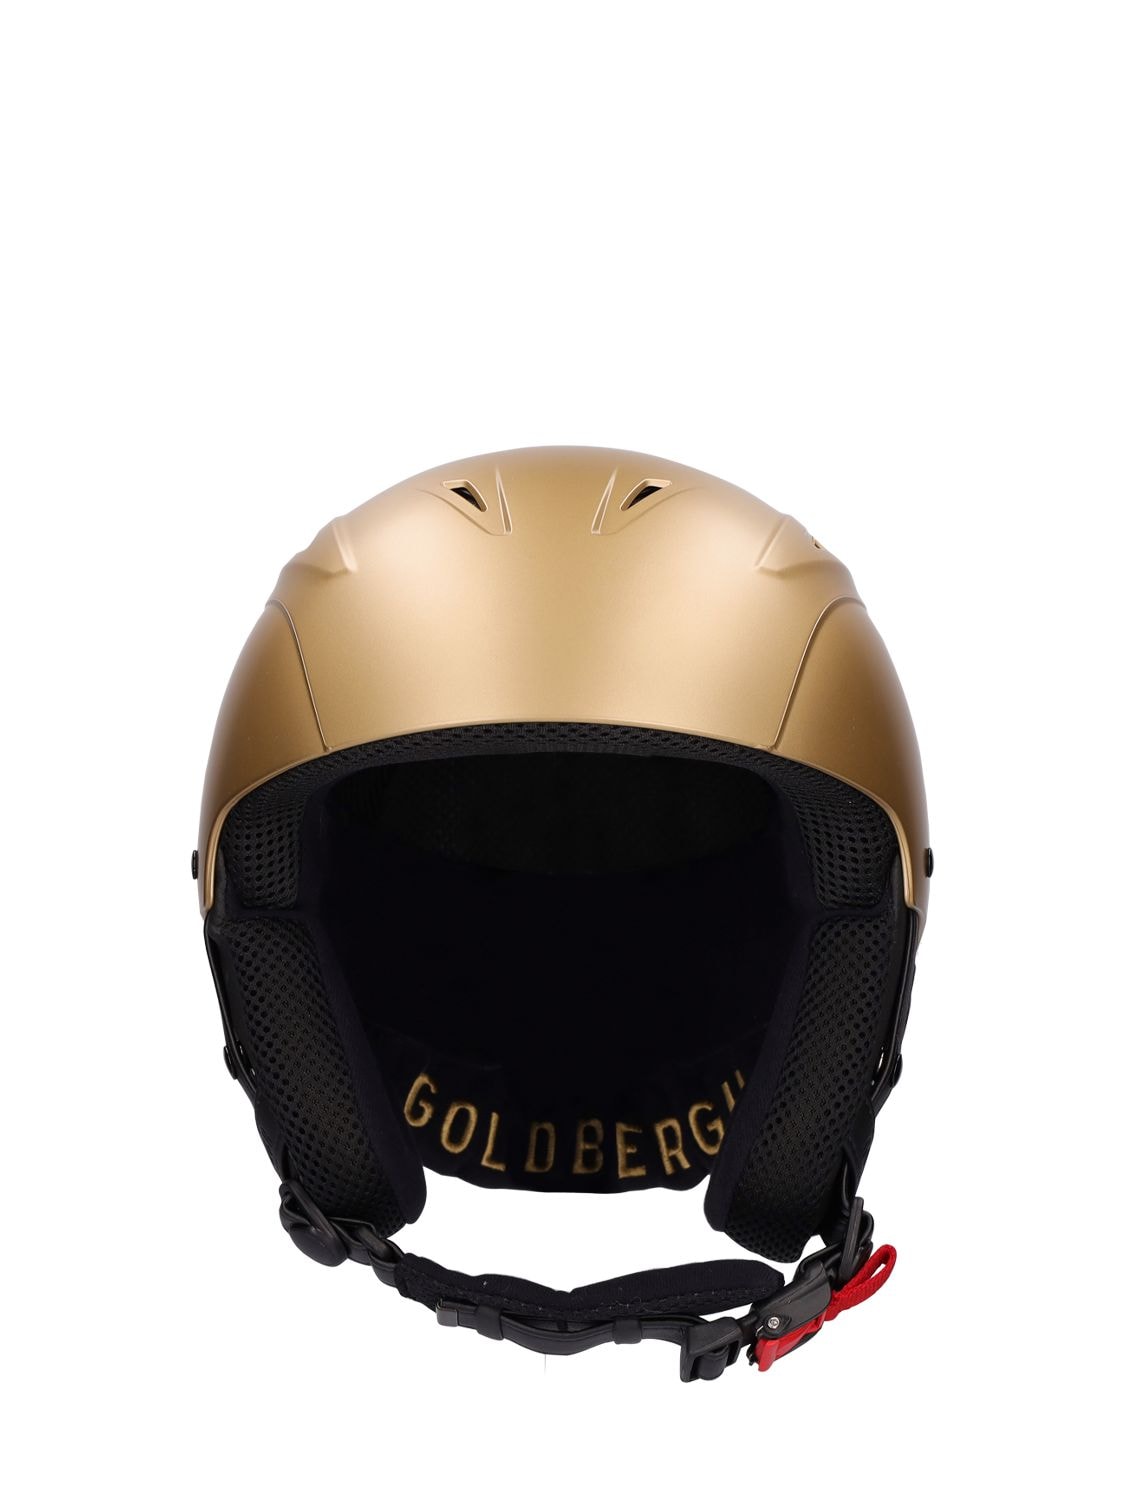 Goldbergh Khloe Ski Helmet In Gold